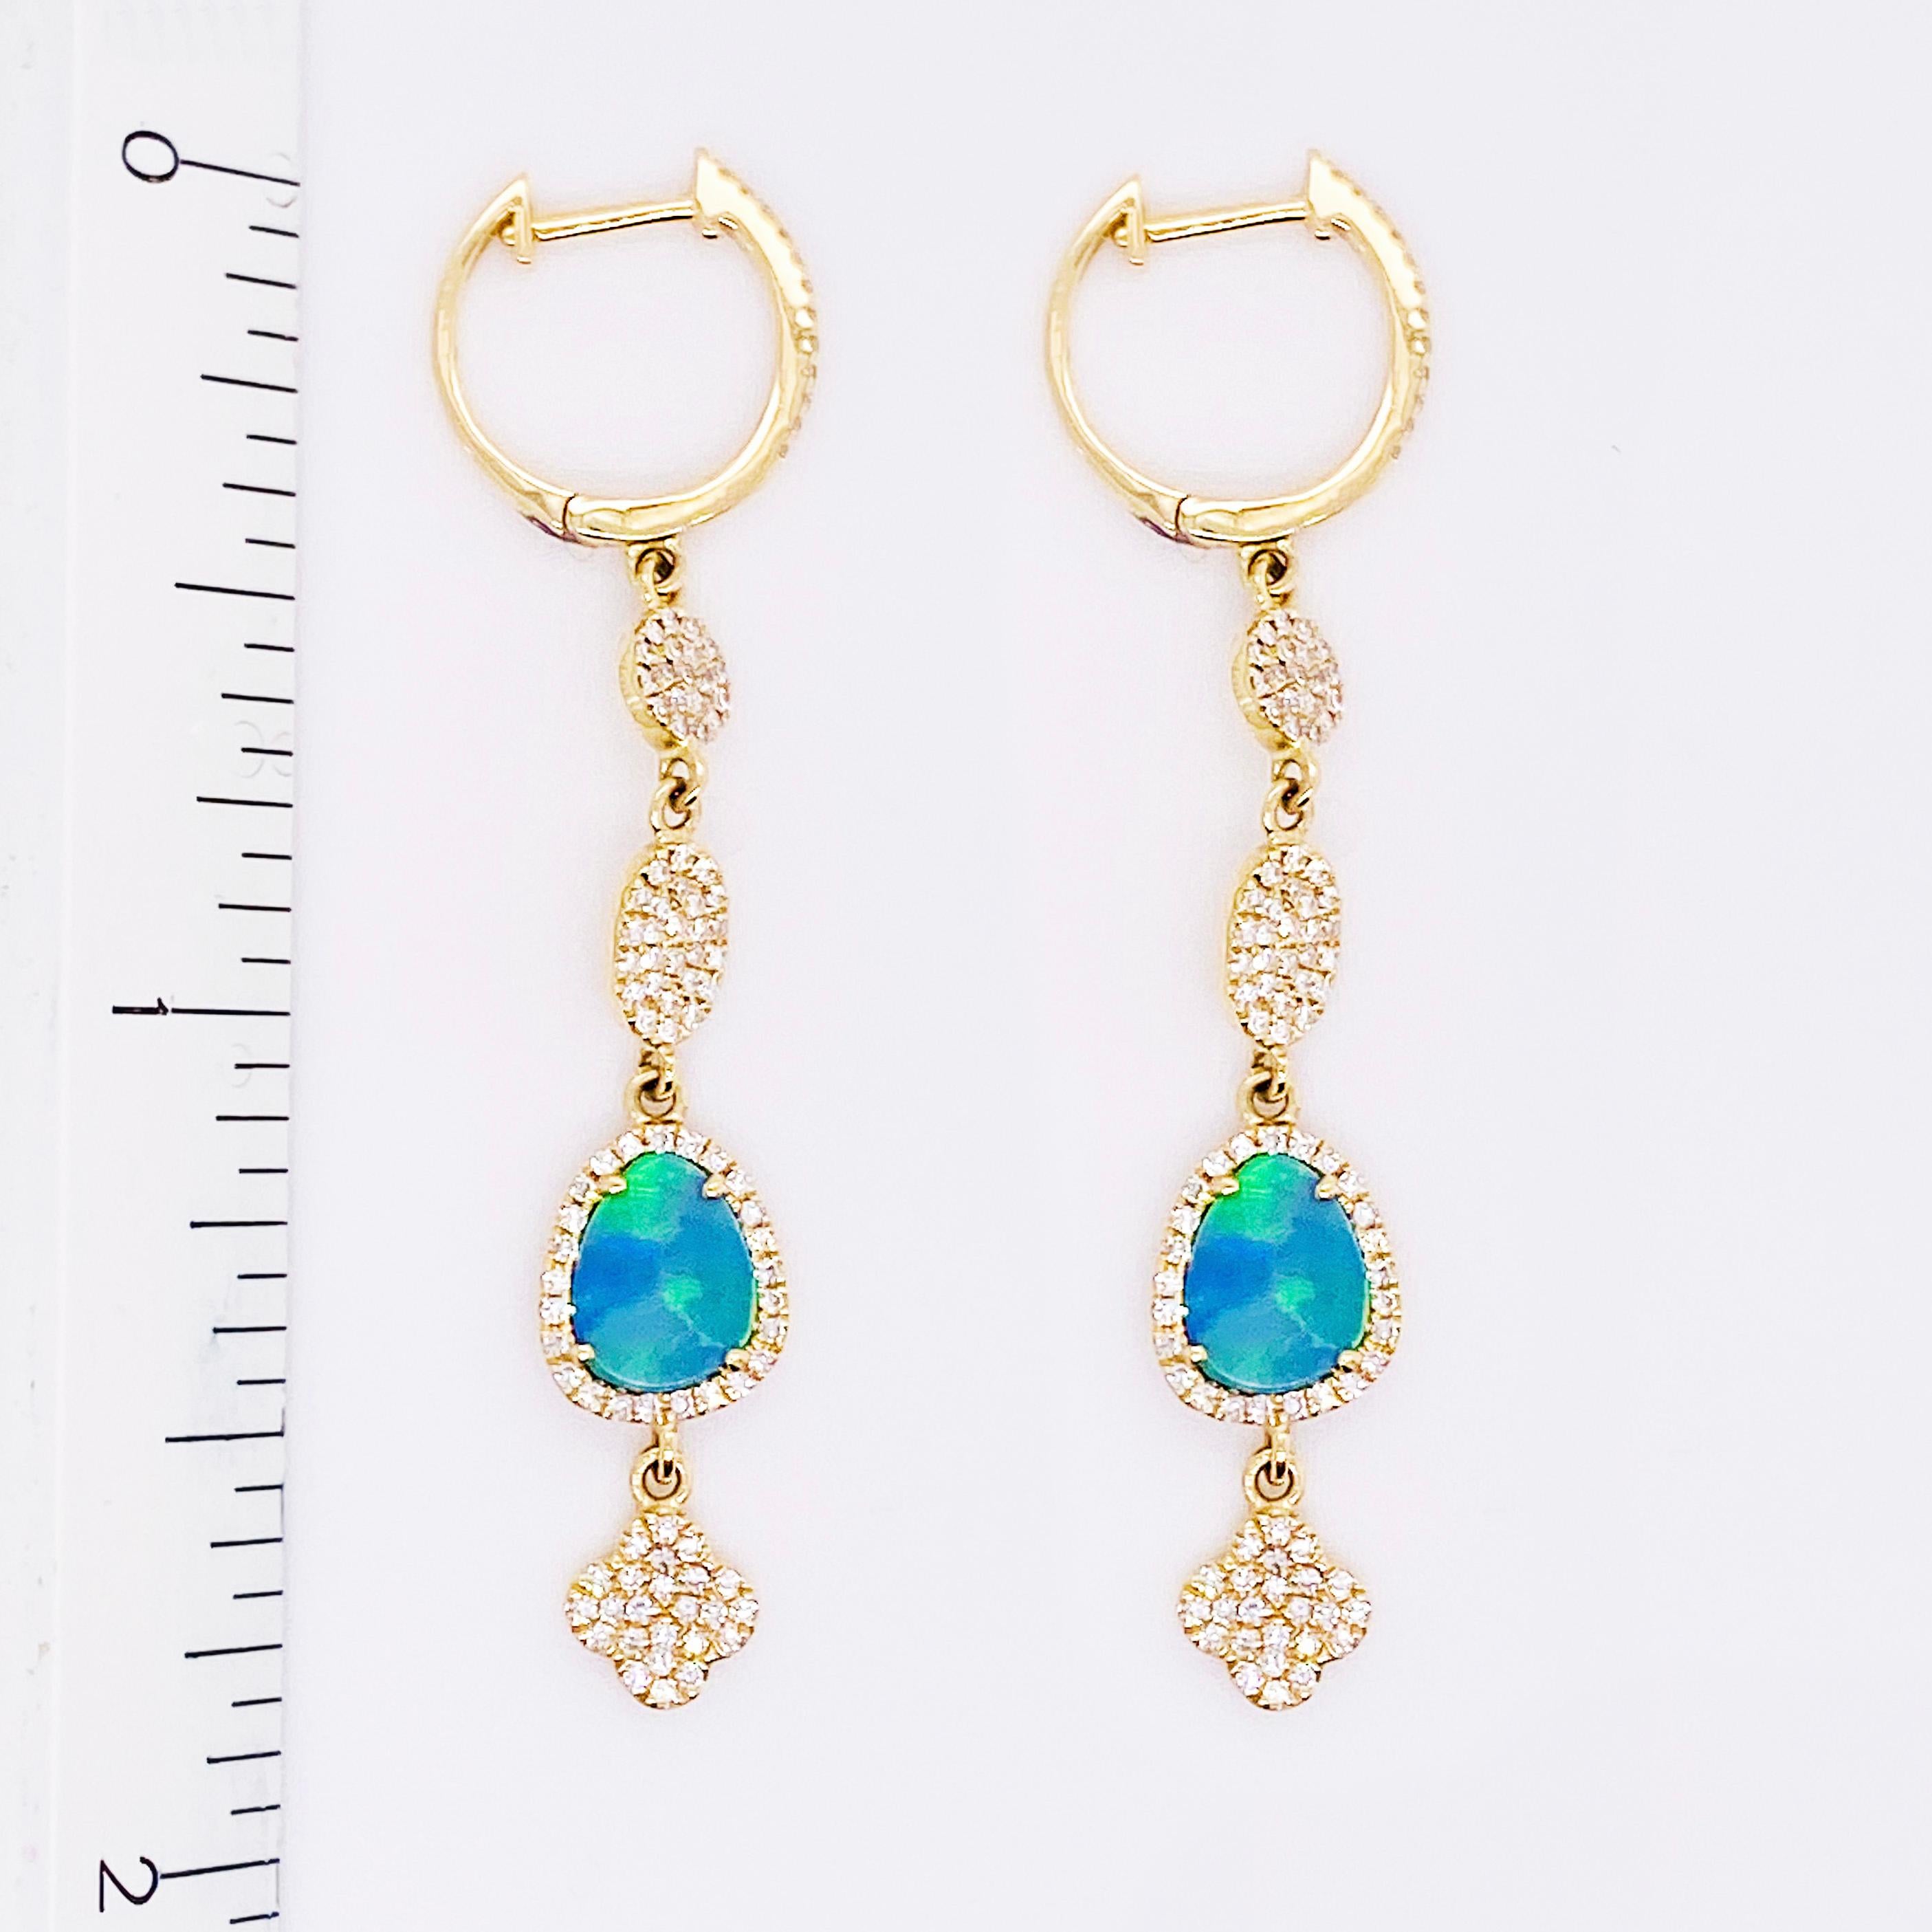 Diamond & Opal Earring Dangles 14 Karat Gold 2.25 Carat Opal & Diamond Earrings In New Condition For Sale In Austin, TX